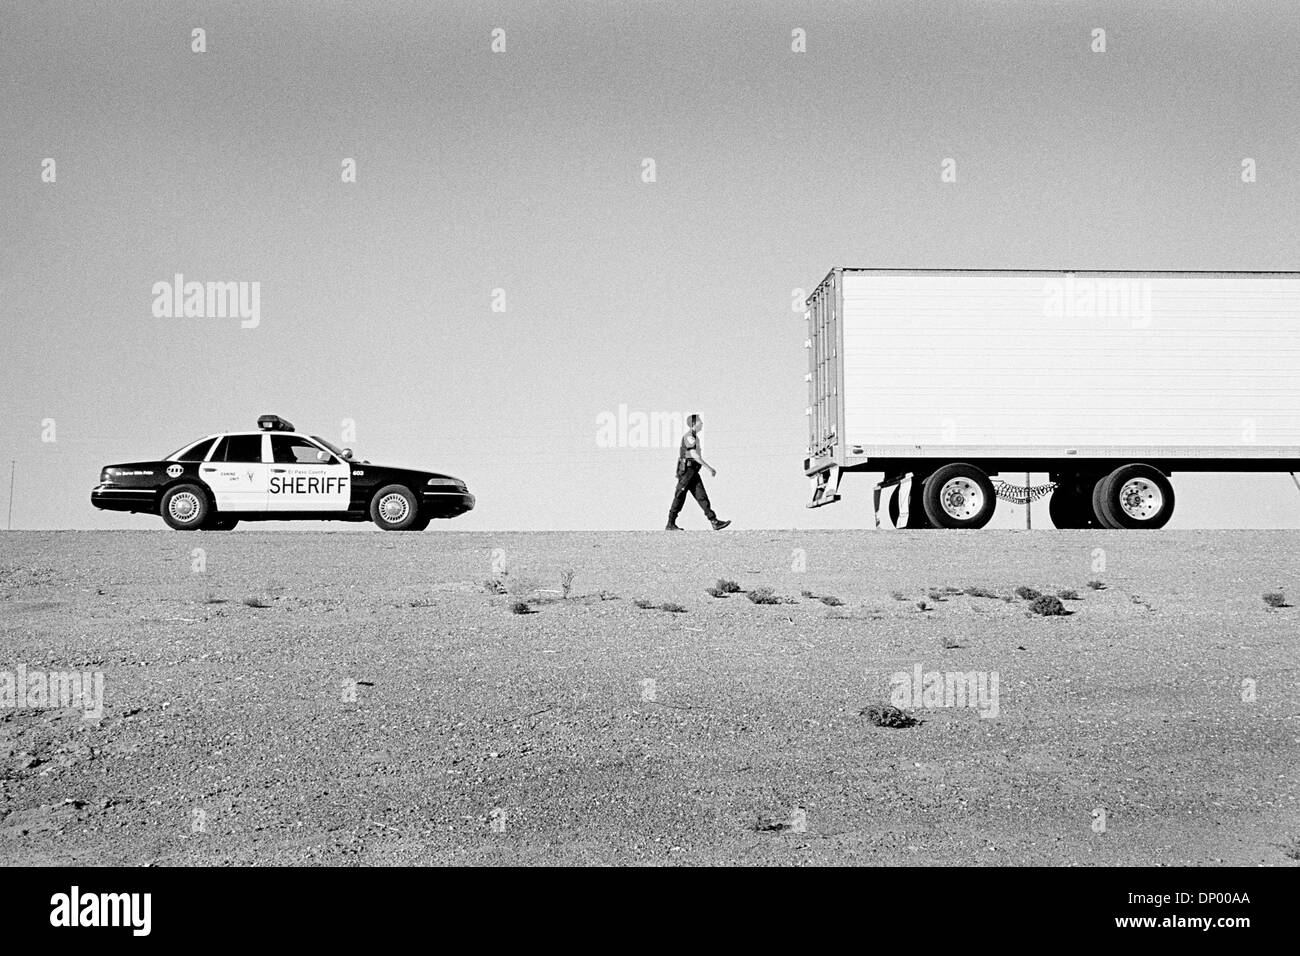 21 févr. 2006 ; El Paso, TX, USA ; (Photo d'archives ; 1997) Grande 18 camions wheeler sont couramment utilisés pour introduire des tonnes de drogue dans le pays. Crédit obligatoire : Photo par Jérôme Brunet/ZUMA Press. (©) Copyright 2006 by Jerome Brunet Banque D'Images